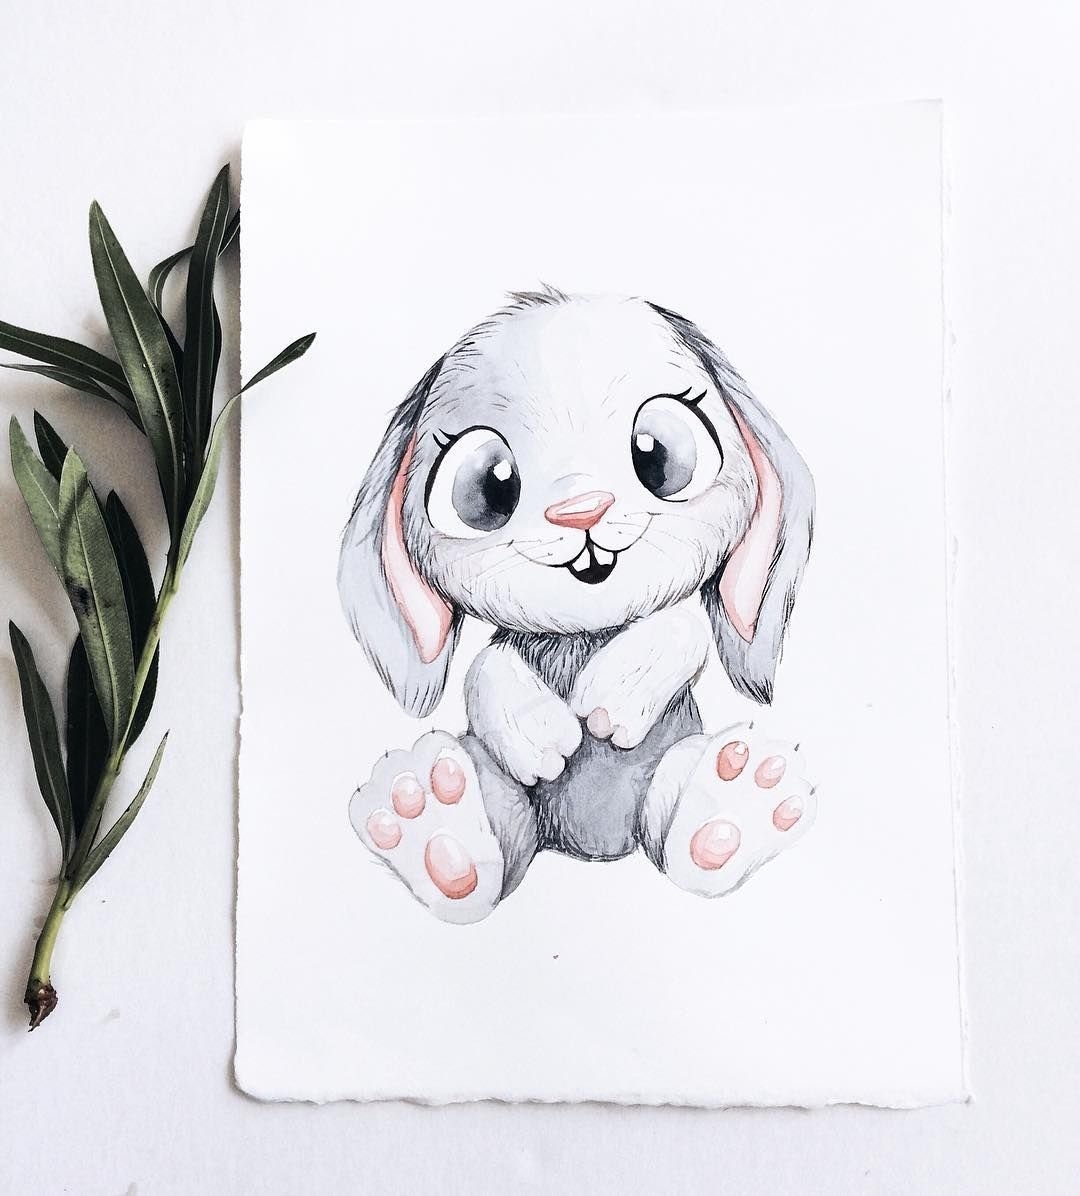 Как нарисовать зайца быстро и мило — простой рисунок зверька, выполненный за две минуты